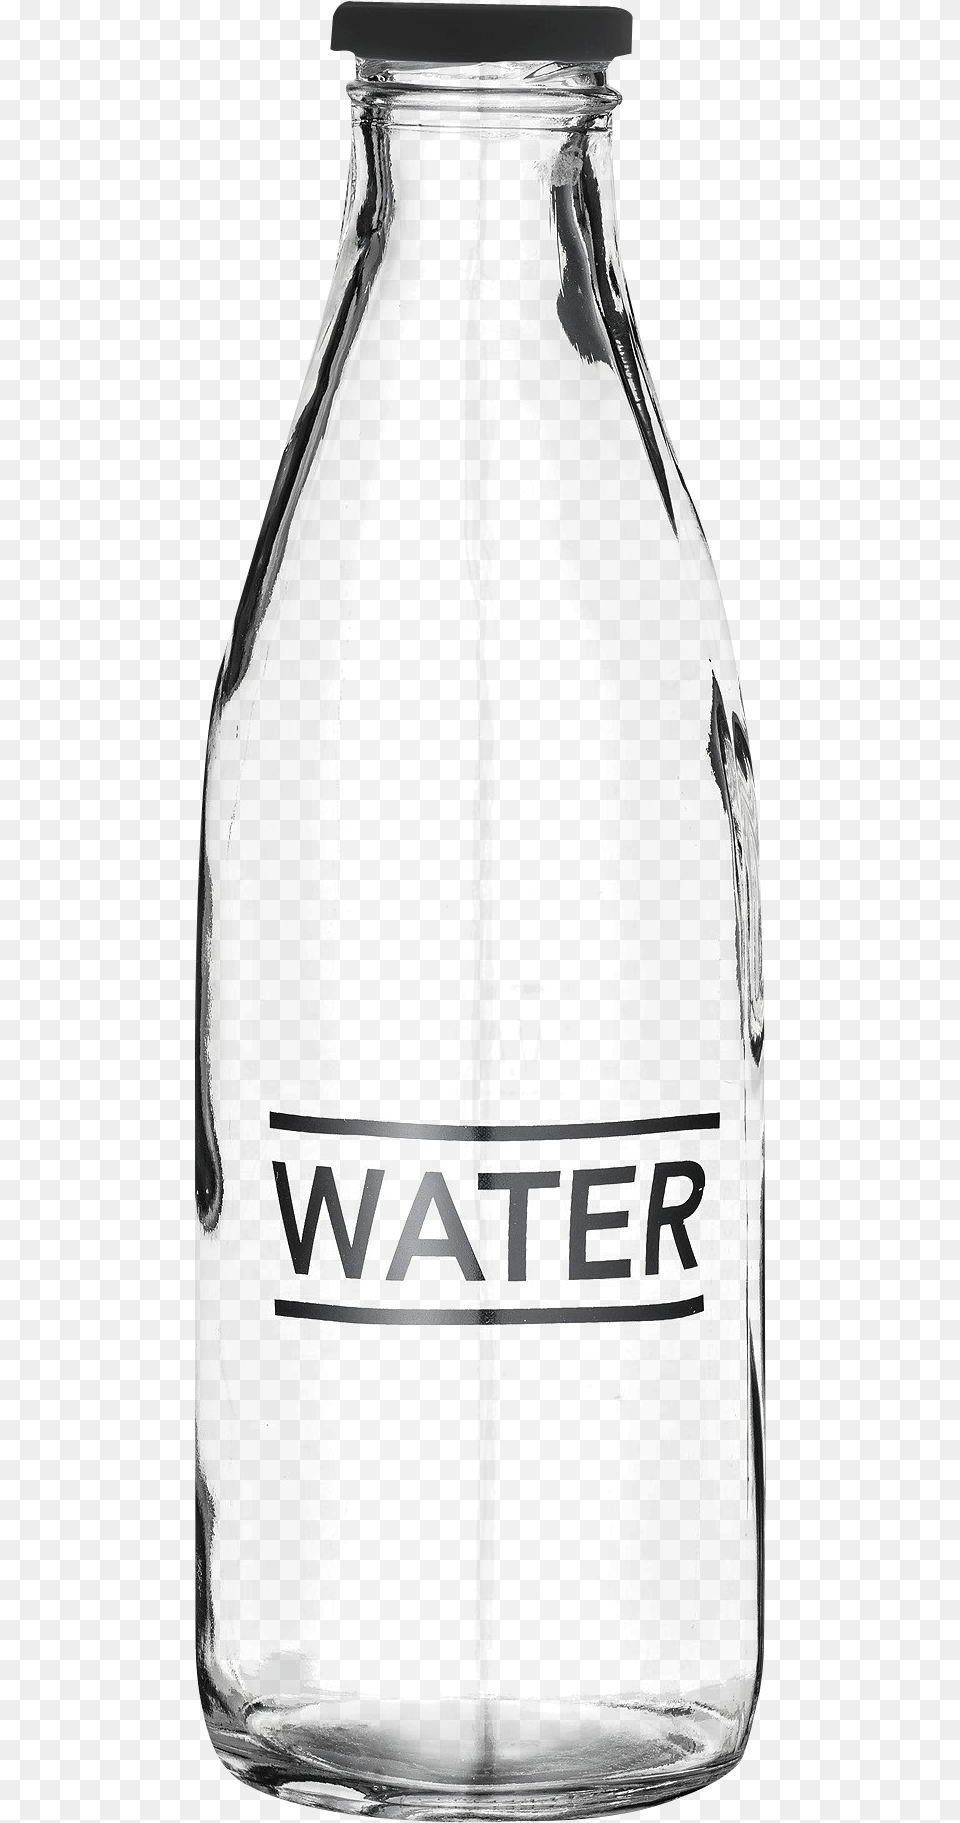 Glass Water Bottle Jar, Alcohol, Beer, Beverage Free Transparent Png